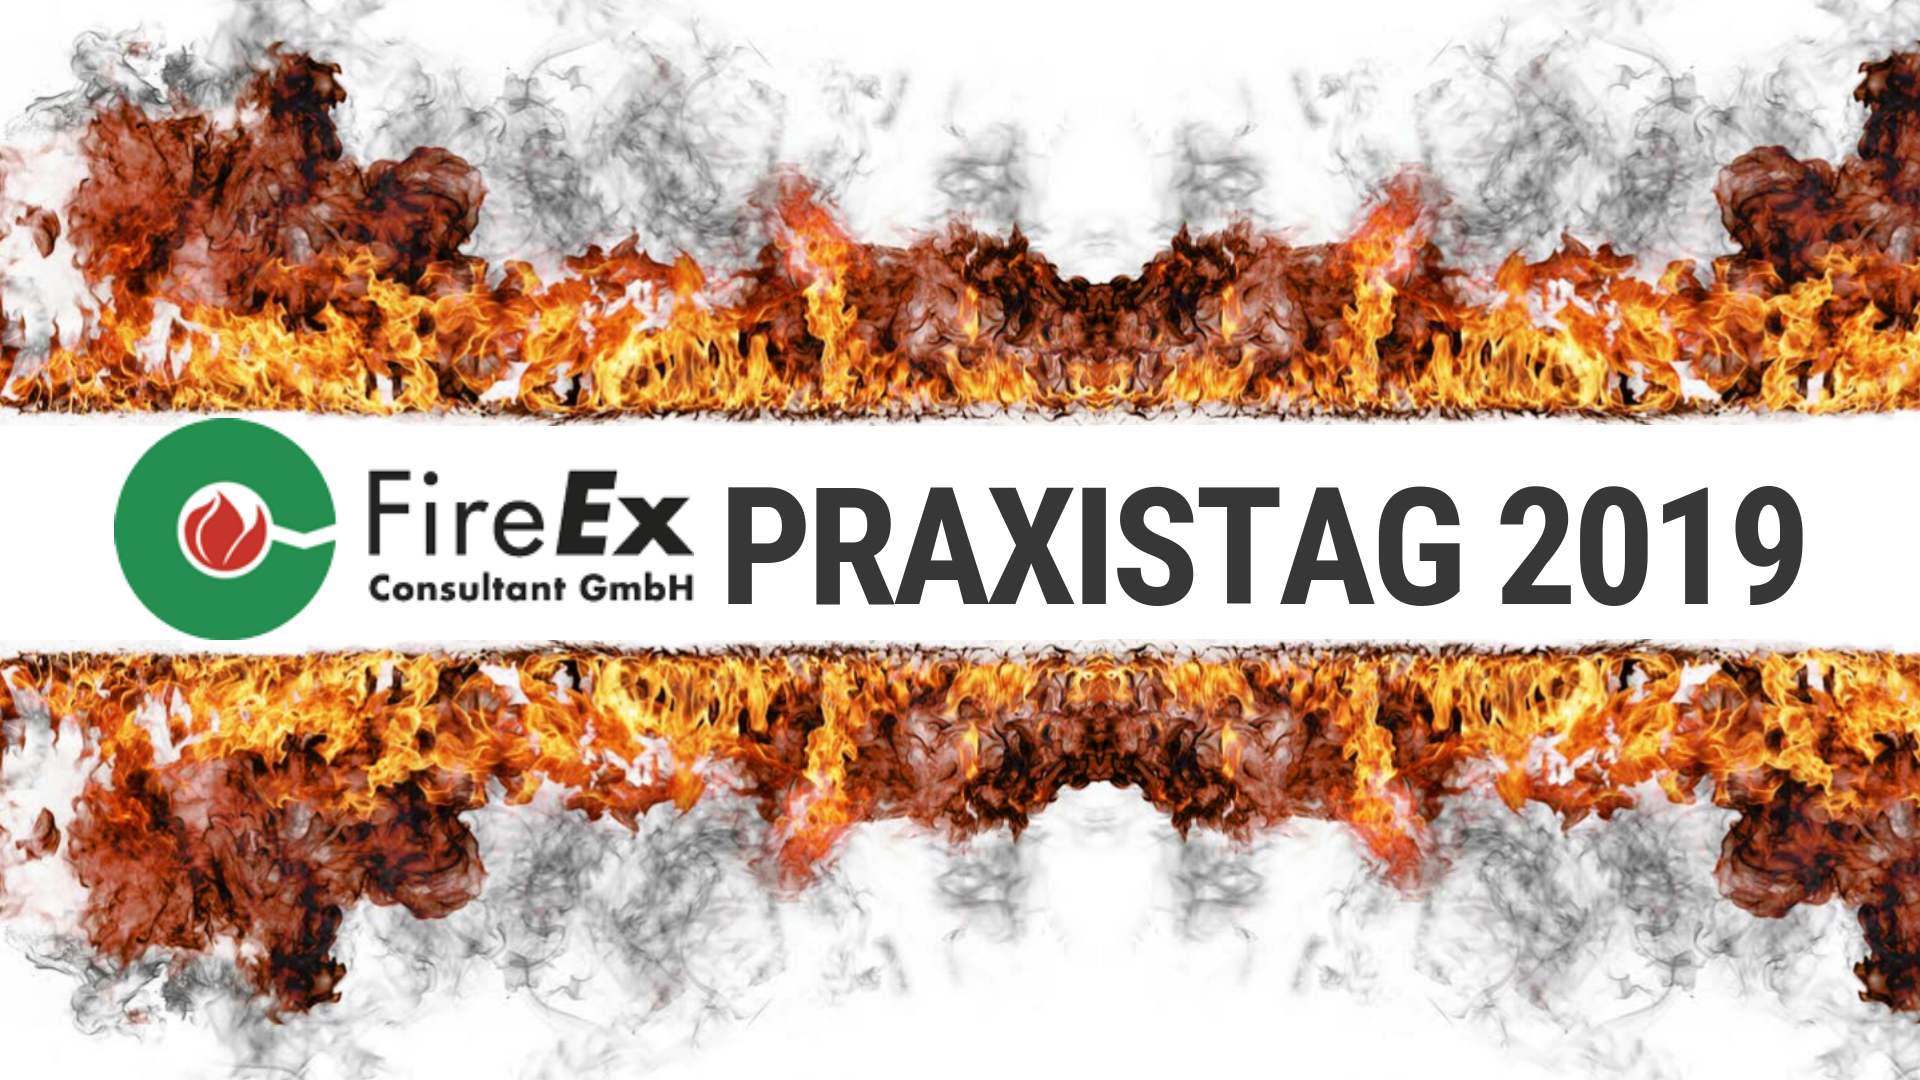 FireEx Praxistage